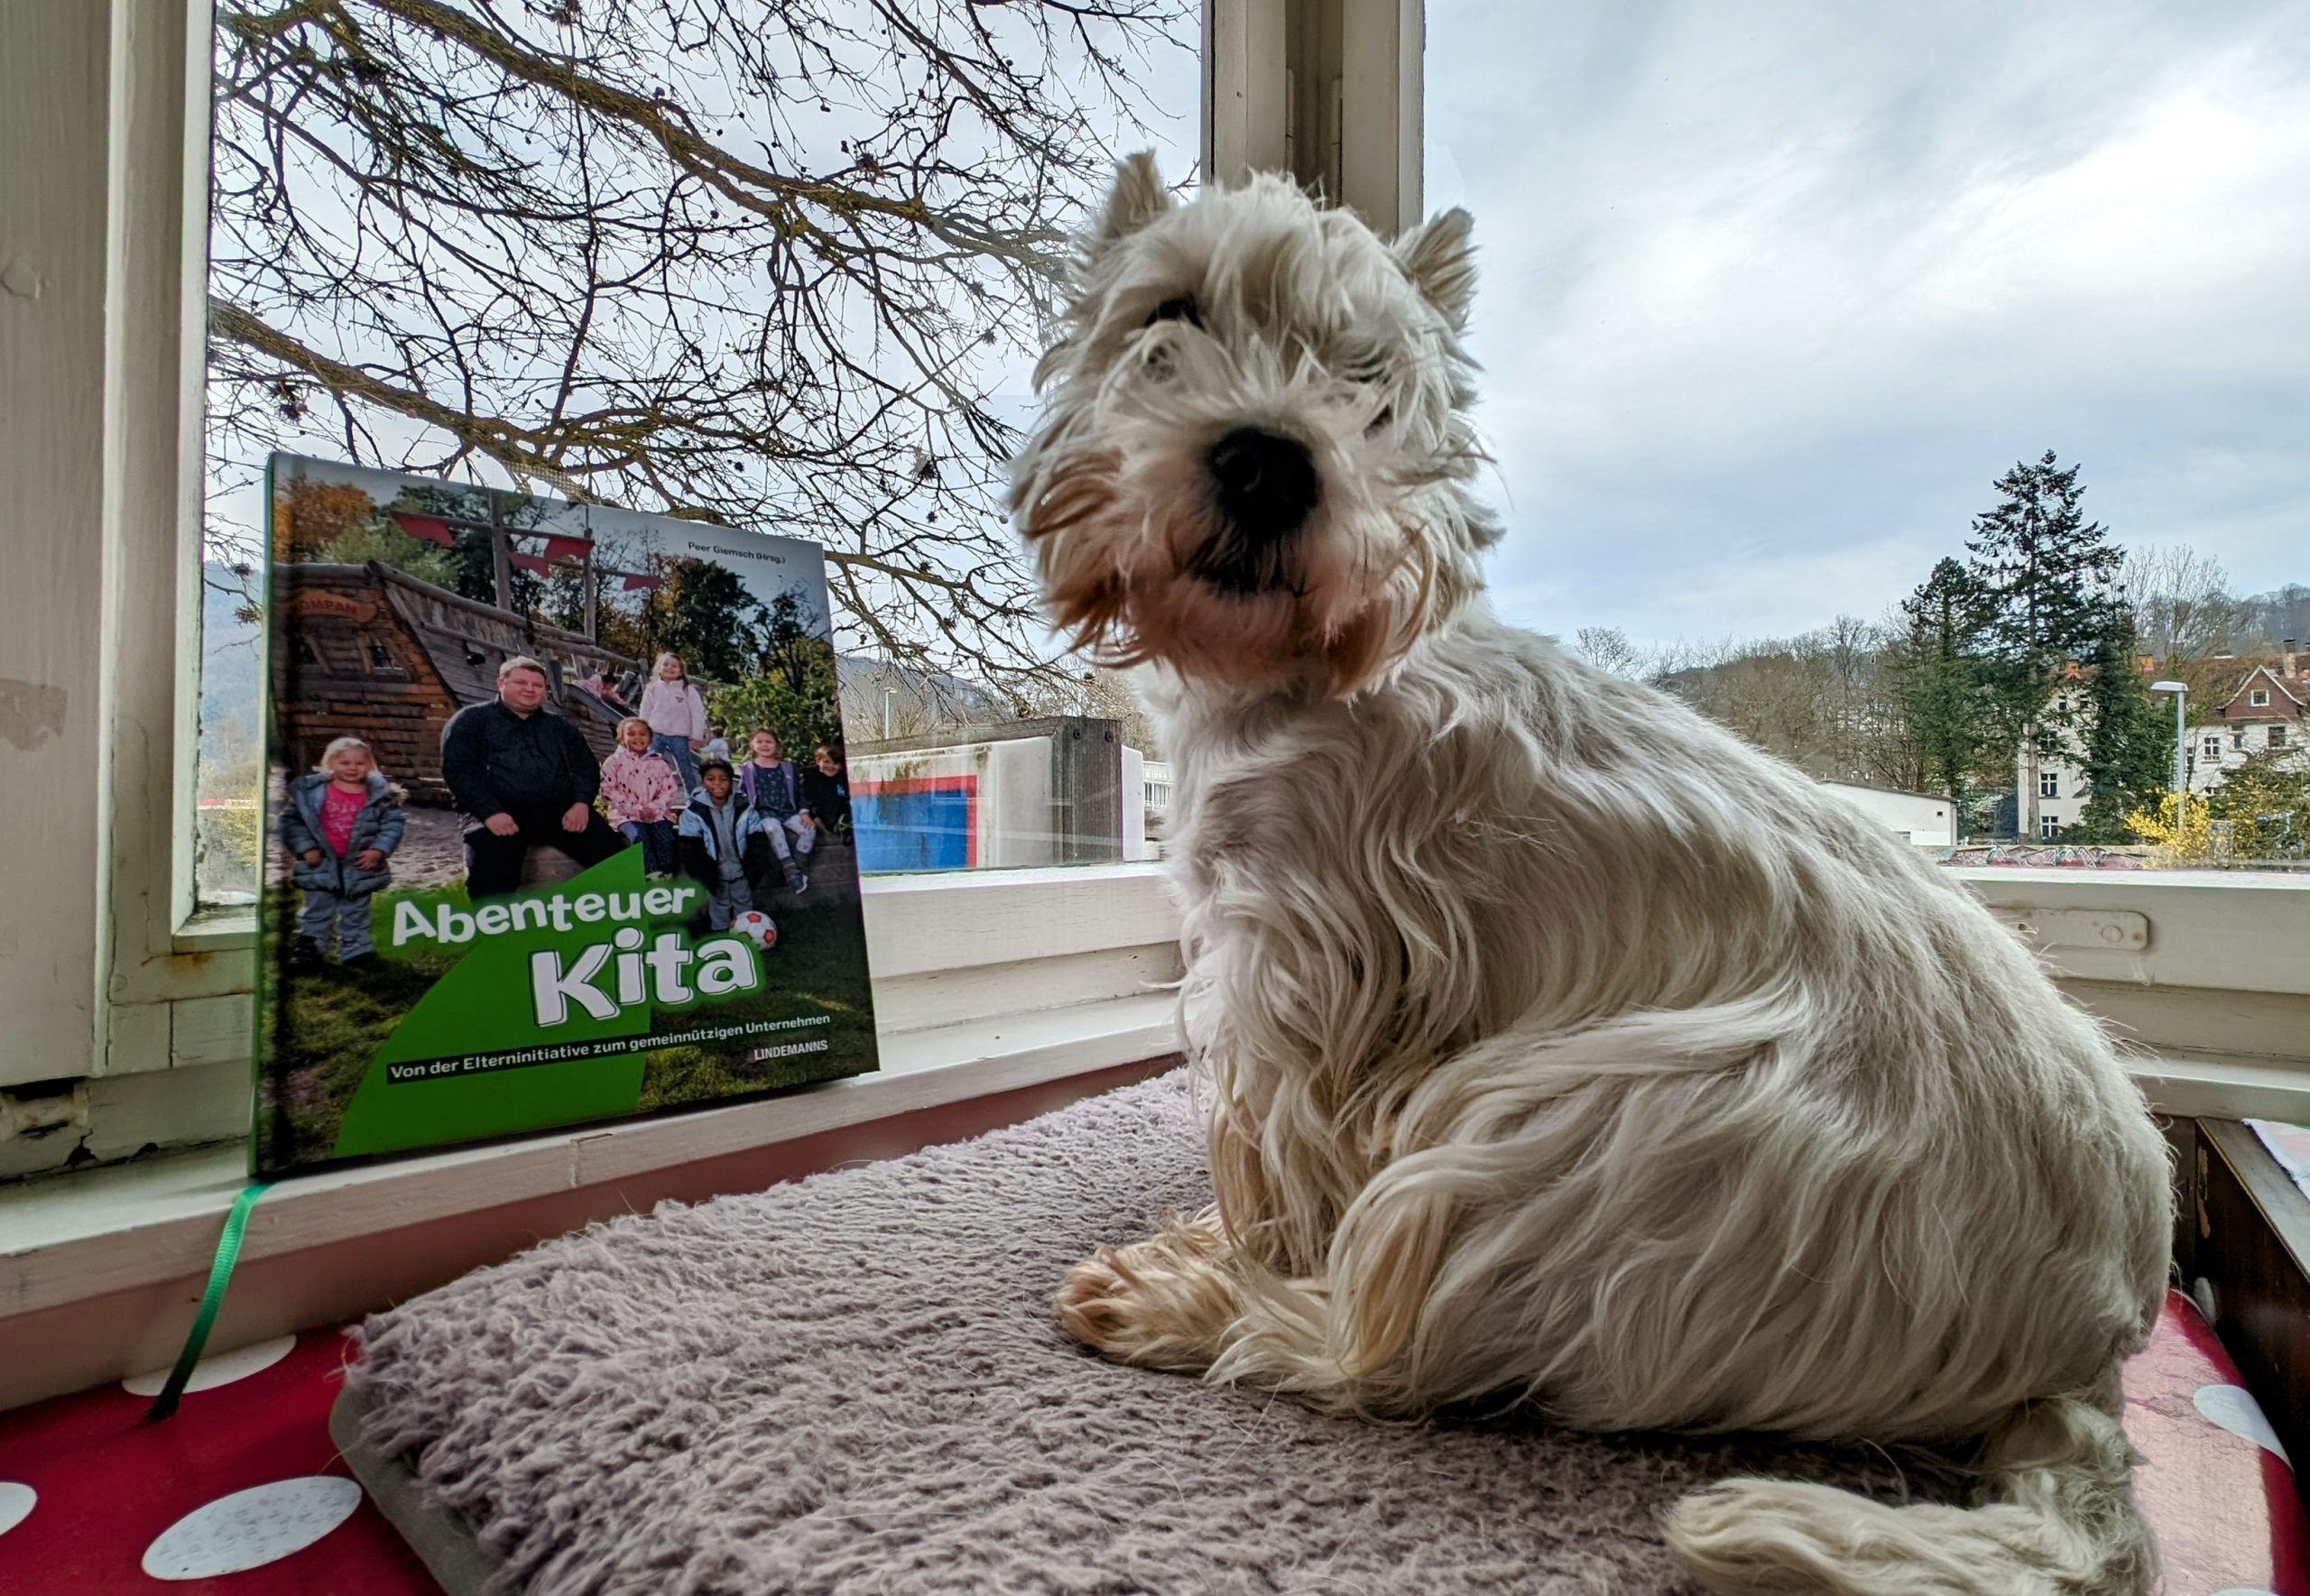 Das Buch Abenteuer Kita mit einem wei8en Hund